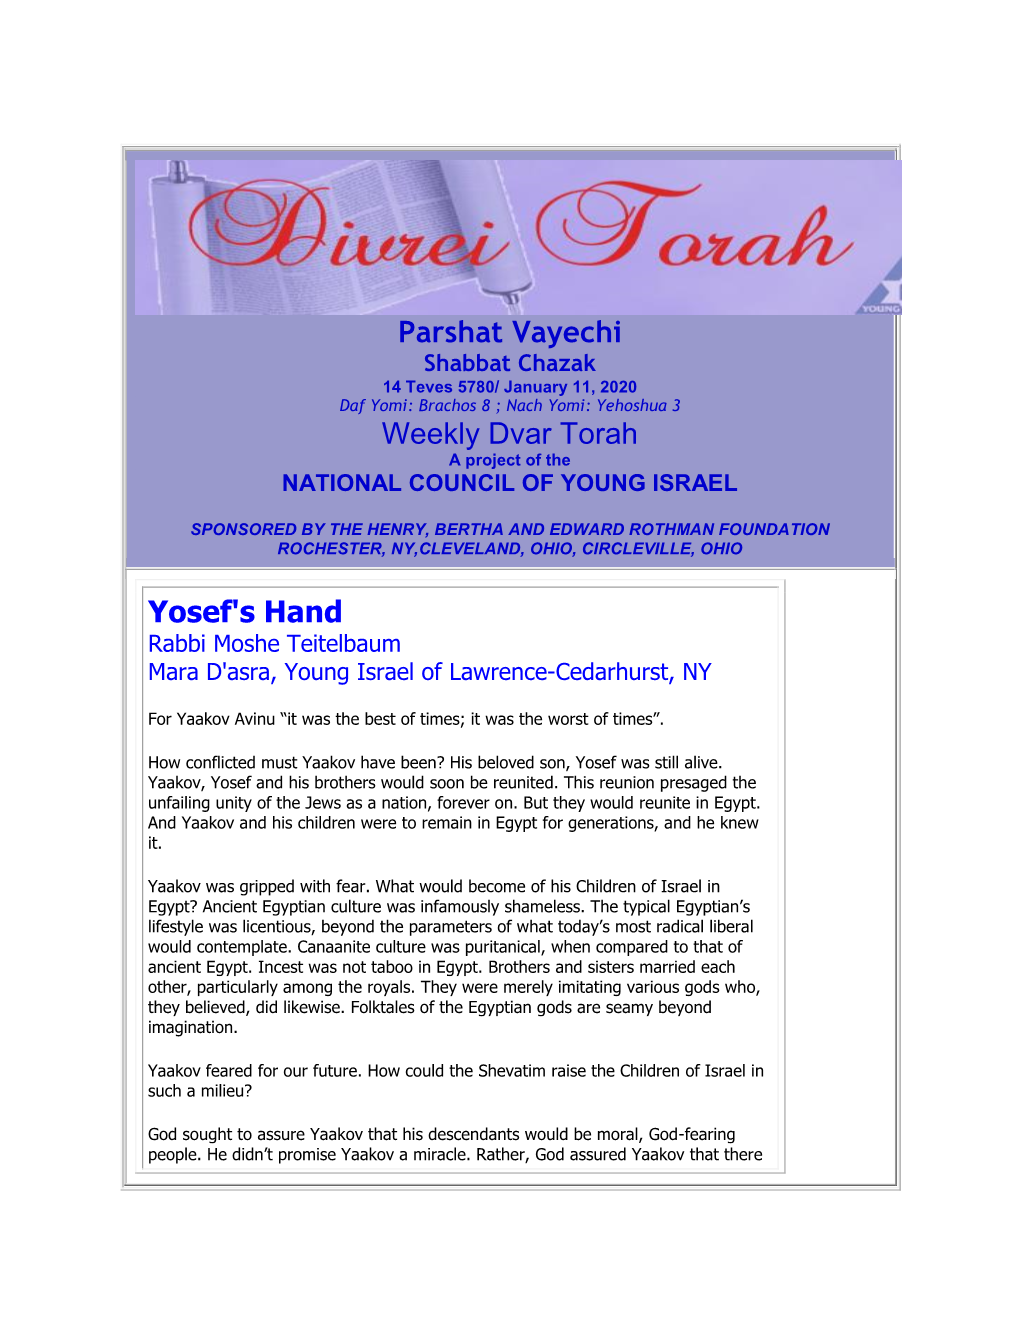 Parshat Vayechi Weekly Dvar Torah Yosef's Hand